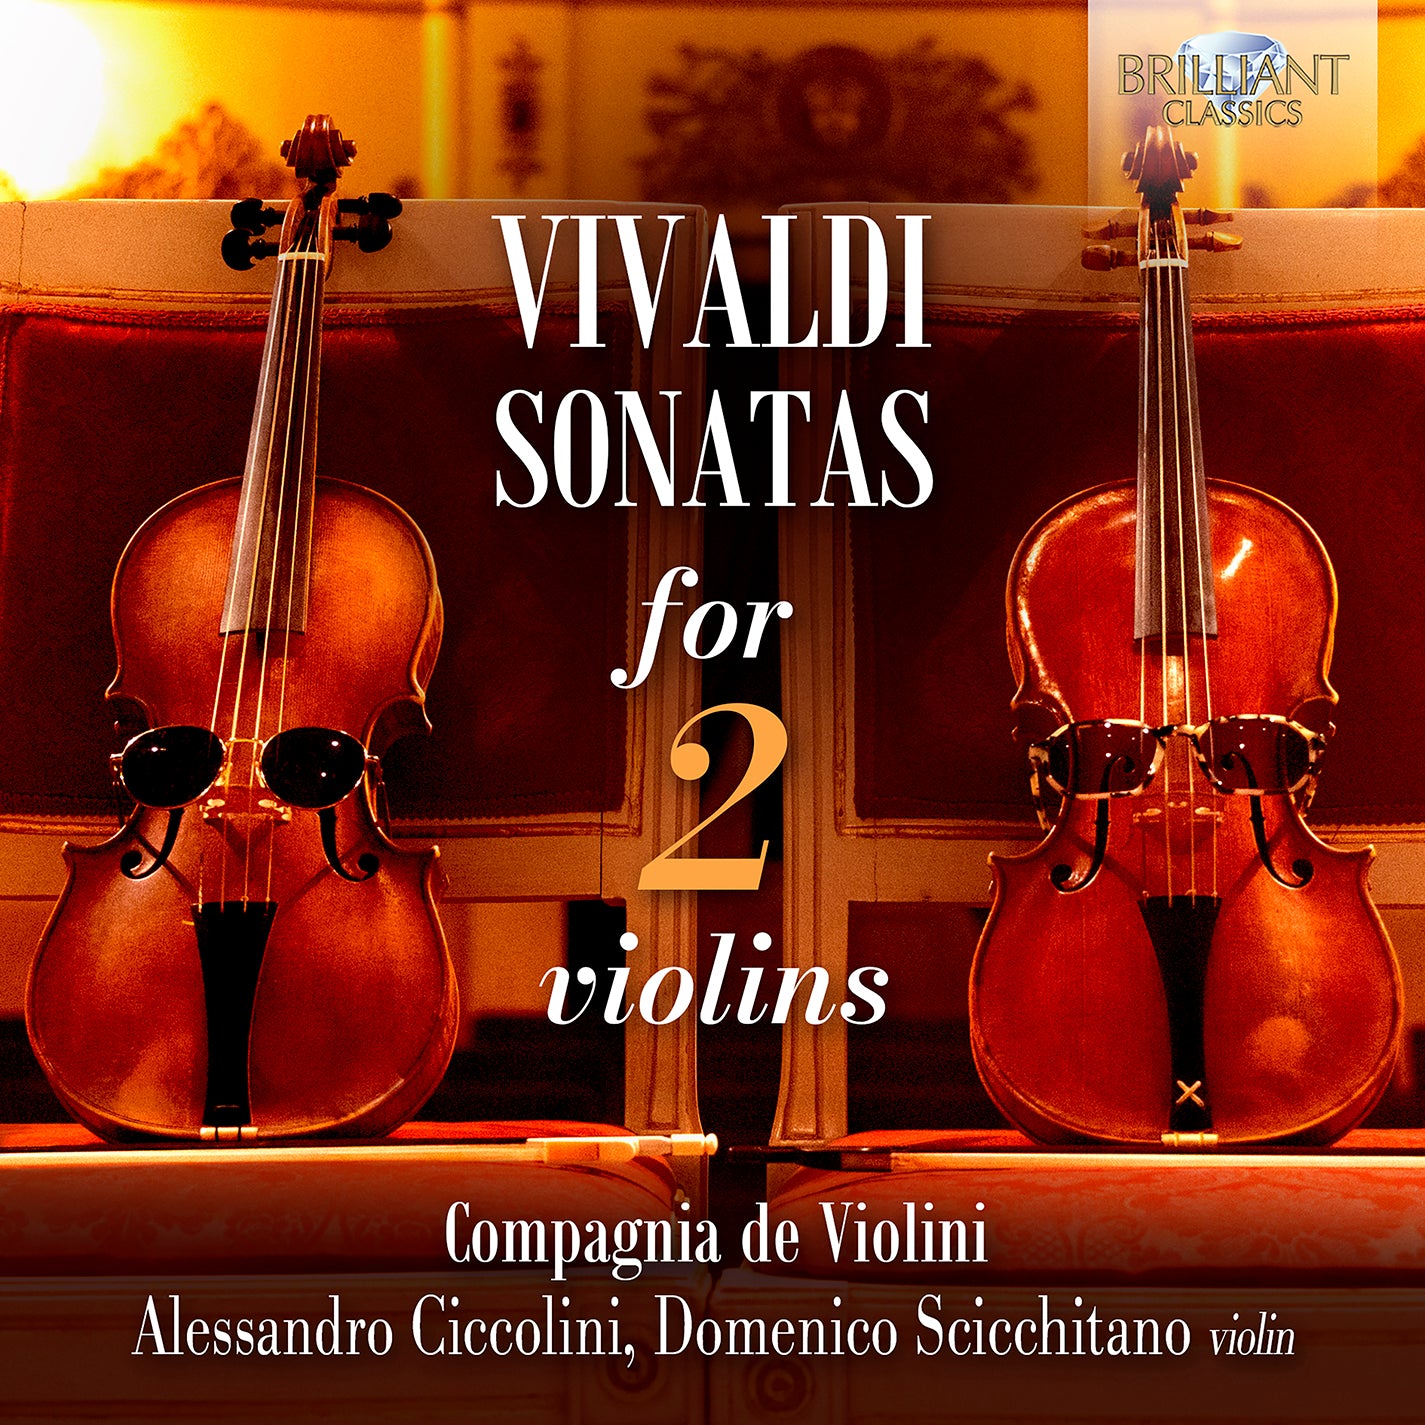 Vivaldi: Sonatas for 2 Violins / Compagnia de Violini